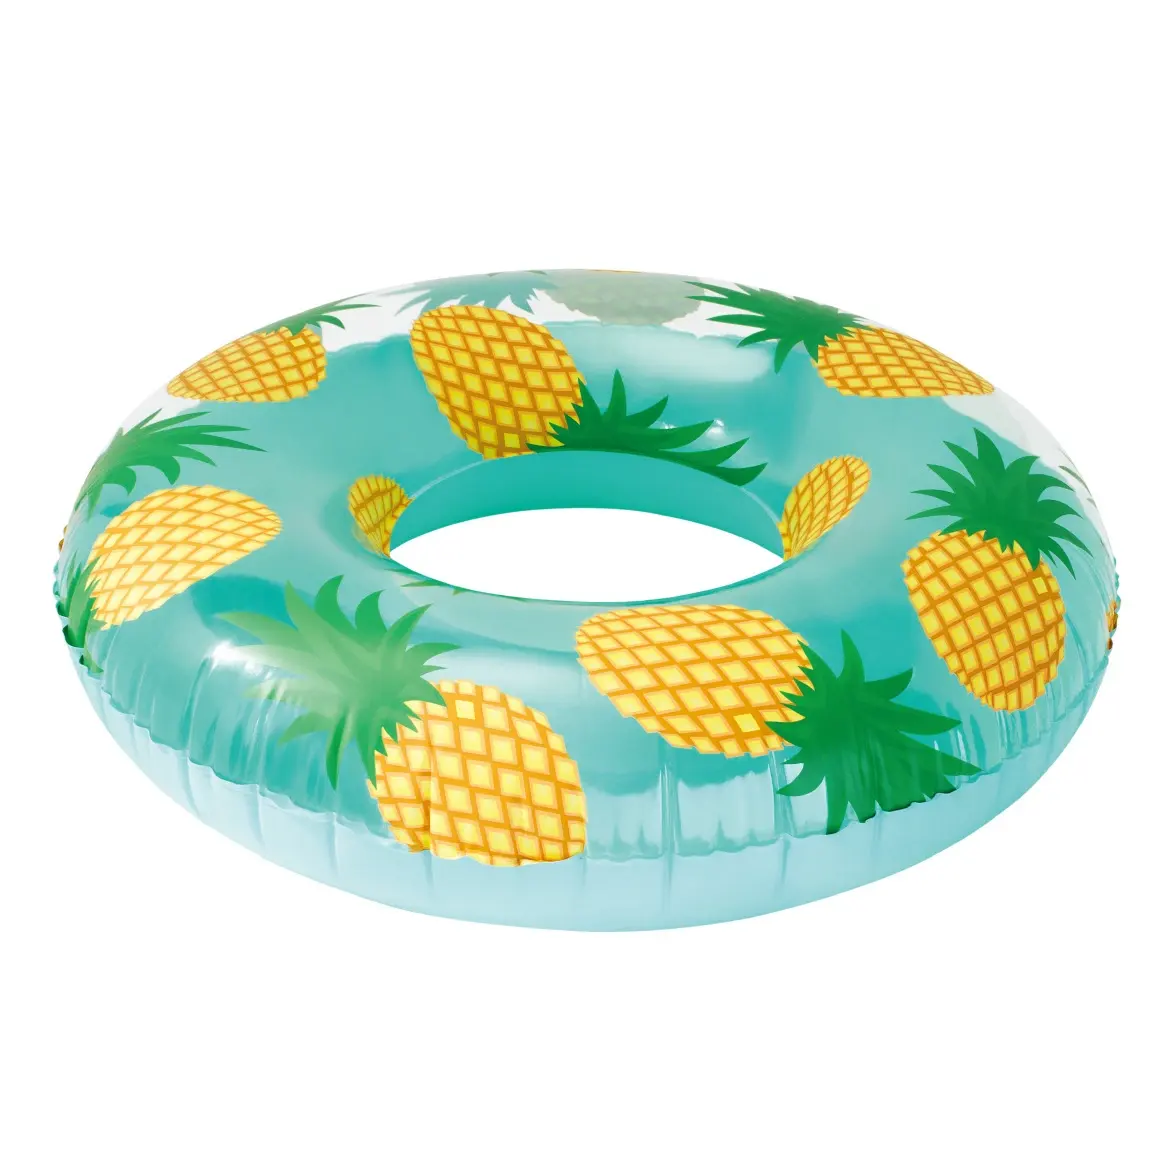 Yeni tasarım ananas baskı tüpü yüzme simidi hava yatağı <span class=keywords><strong>açık</strong></span> yaz <span class=keywords><strong>su</strong></span> parti oyuncakları şişme havuz yatağı çocuklar yetişkinler için